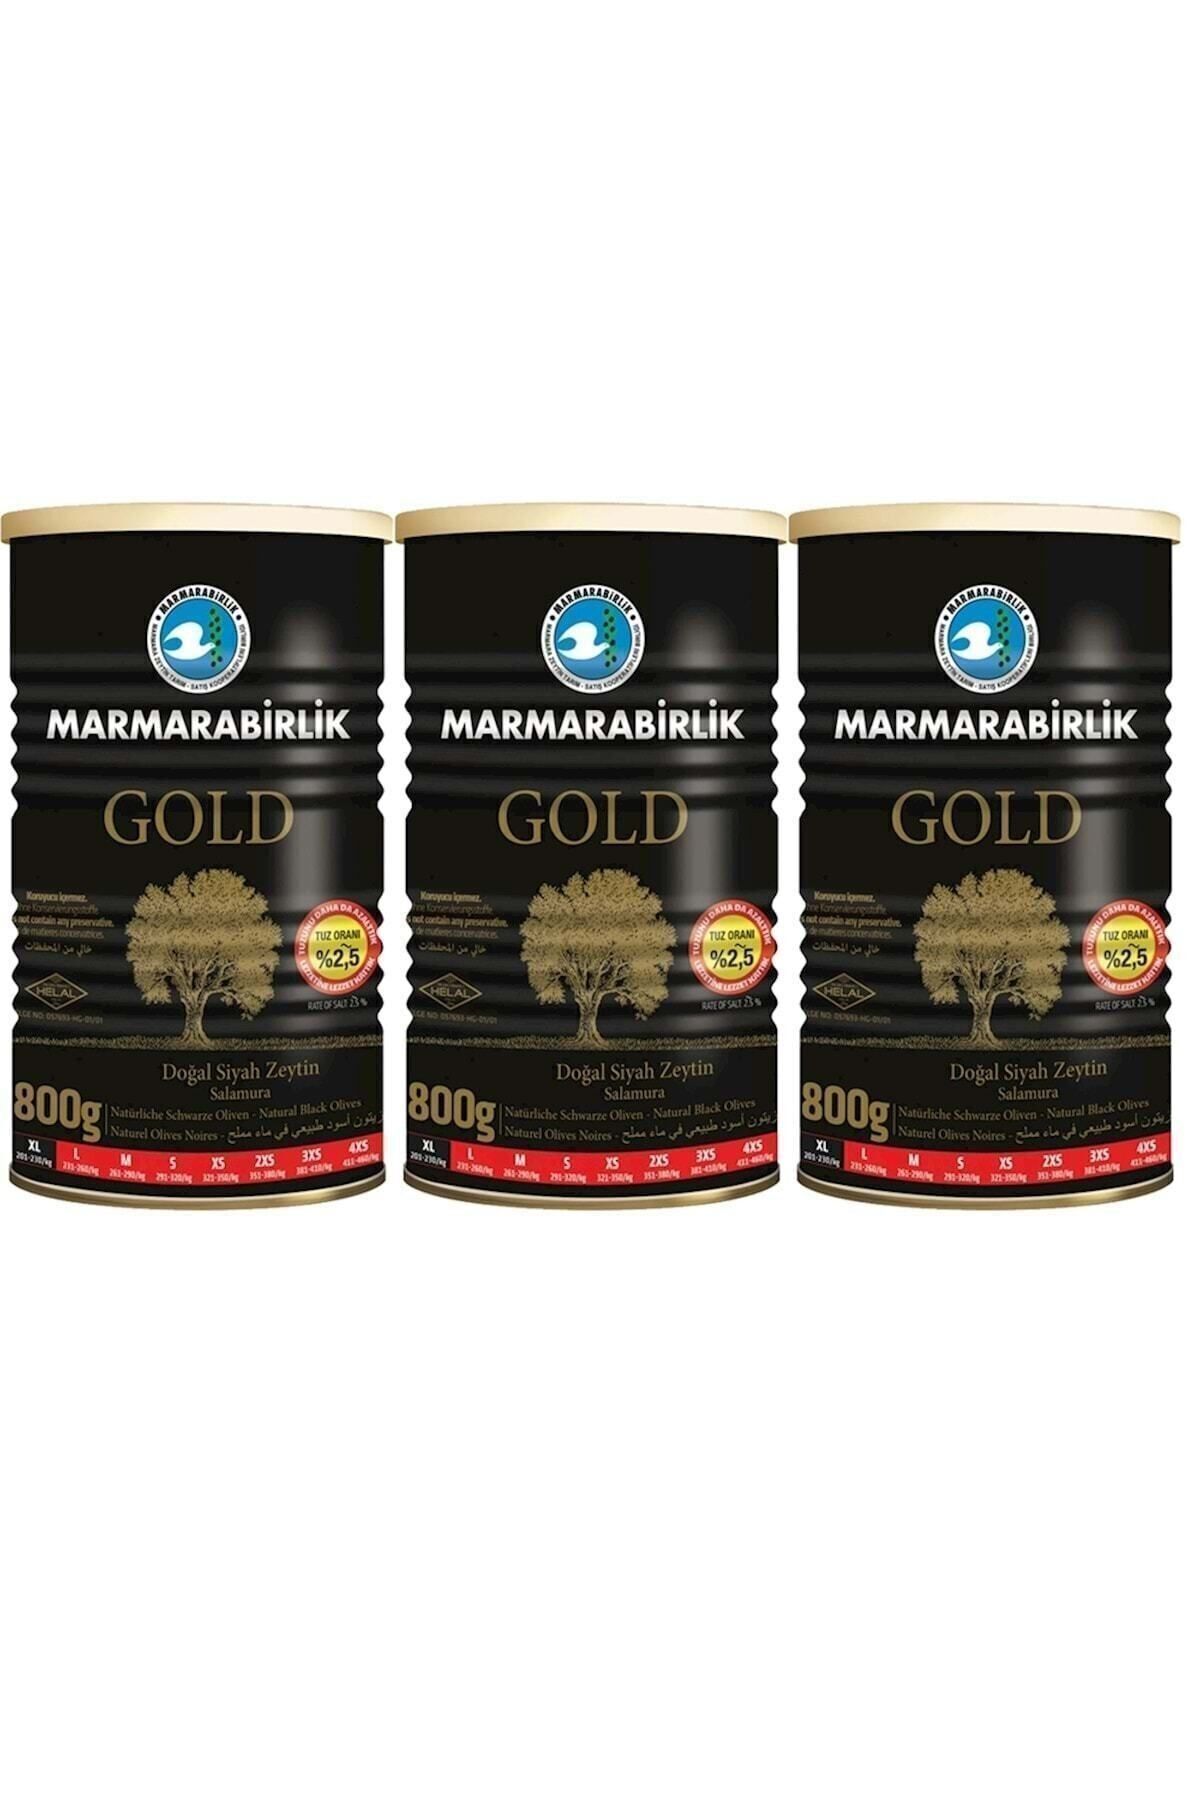 Marmarabirlik Gold Siyah Zeytin 800 Gr 201-230 Xl 3 Adet